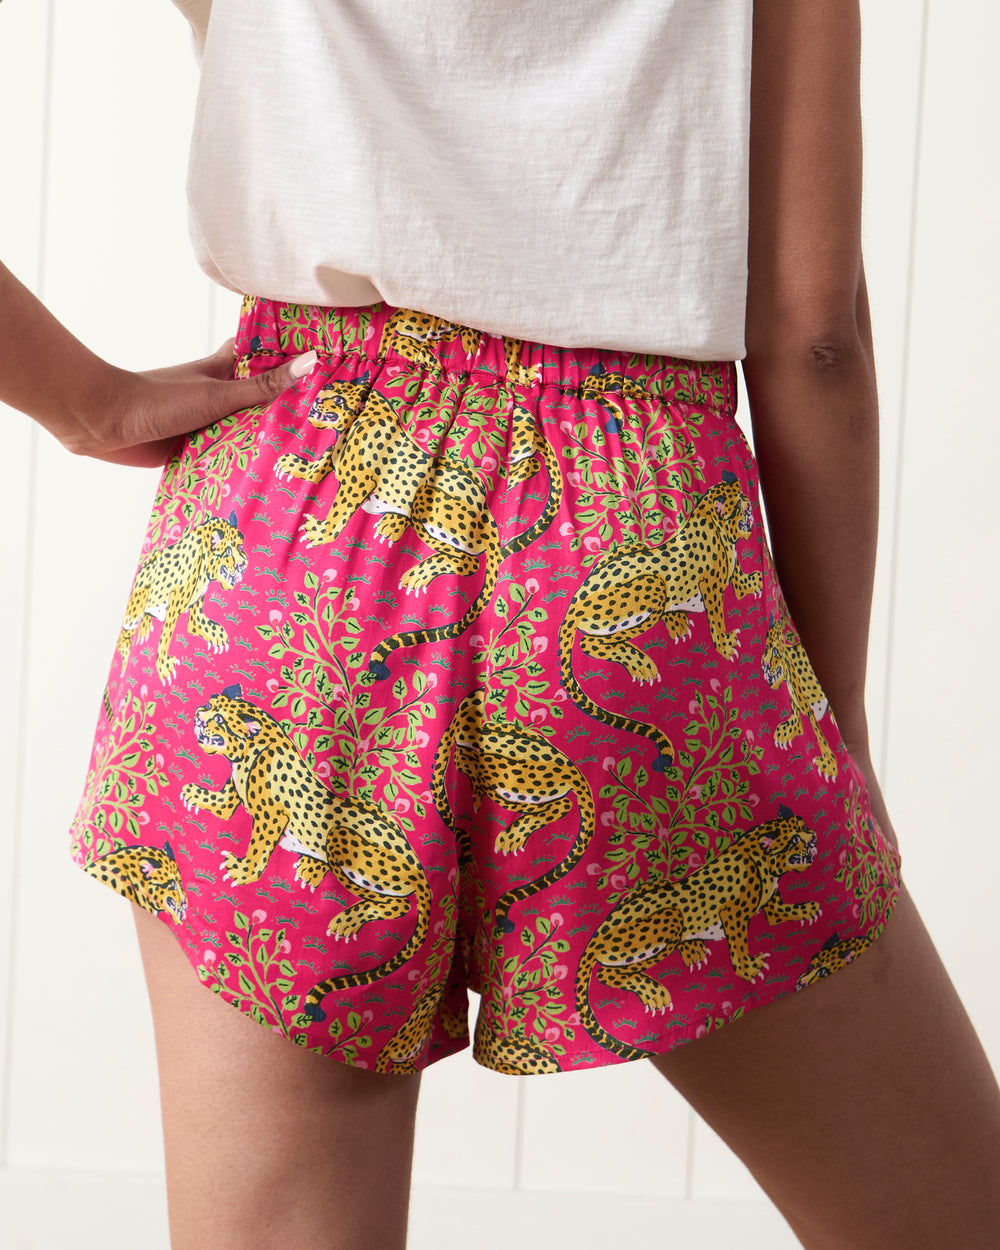 Bagheera - Satin Sweet Dreams Shorts - Hot Pink - Printfresh